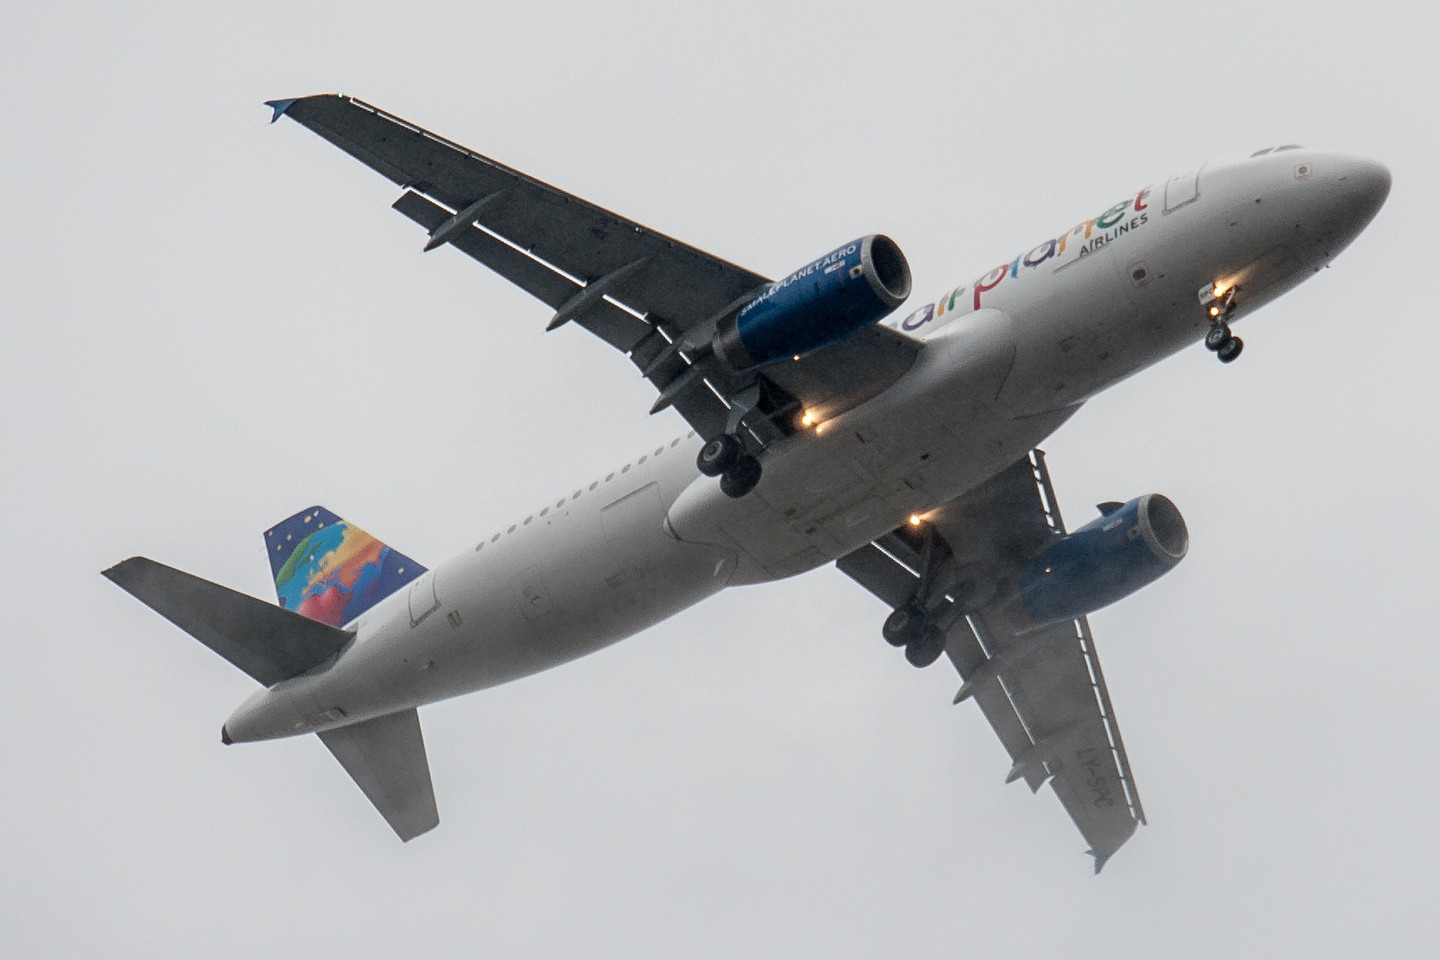 Oro linijų bendrovės „Small Planet Airlines“ lėktuvu Boeing 737-300 skraidė besimokantys pilotai.<br>V.Ščiavinsko nuotr.